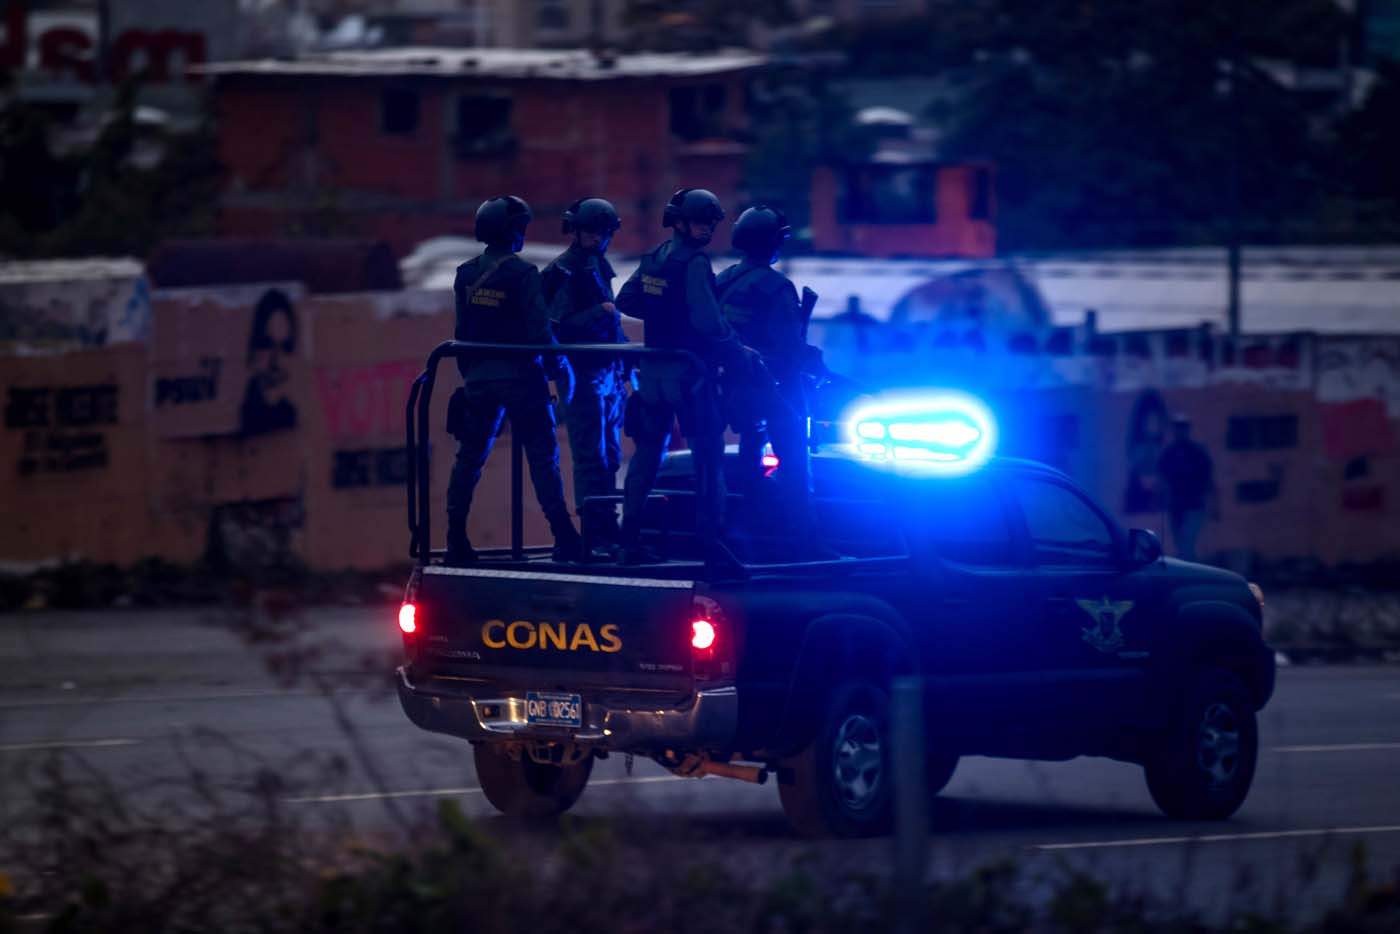 Celulares señuelo y vehículos blindados: Cómo los venezolanos lidian con la inseguridad